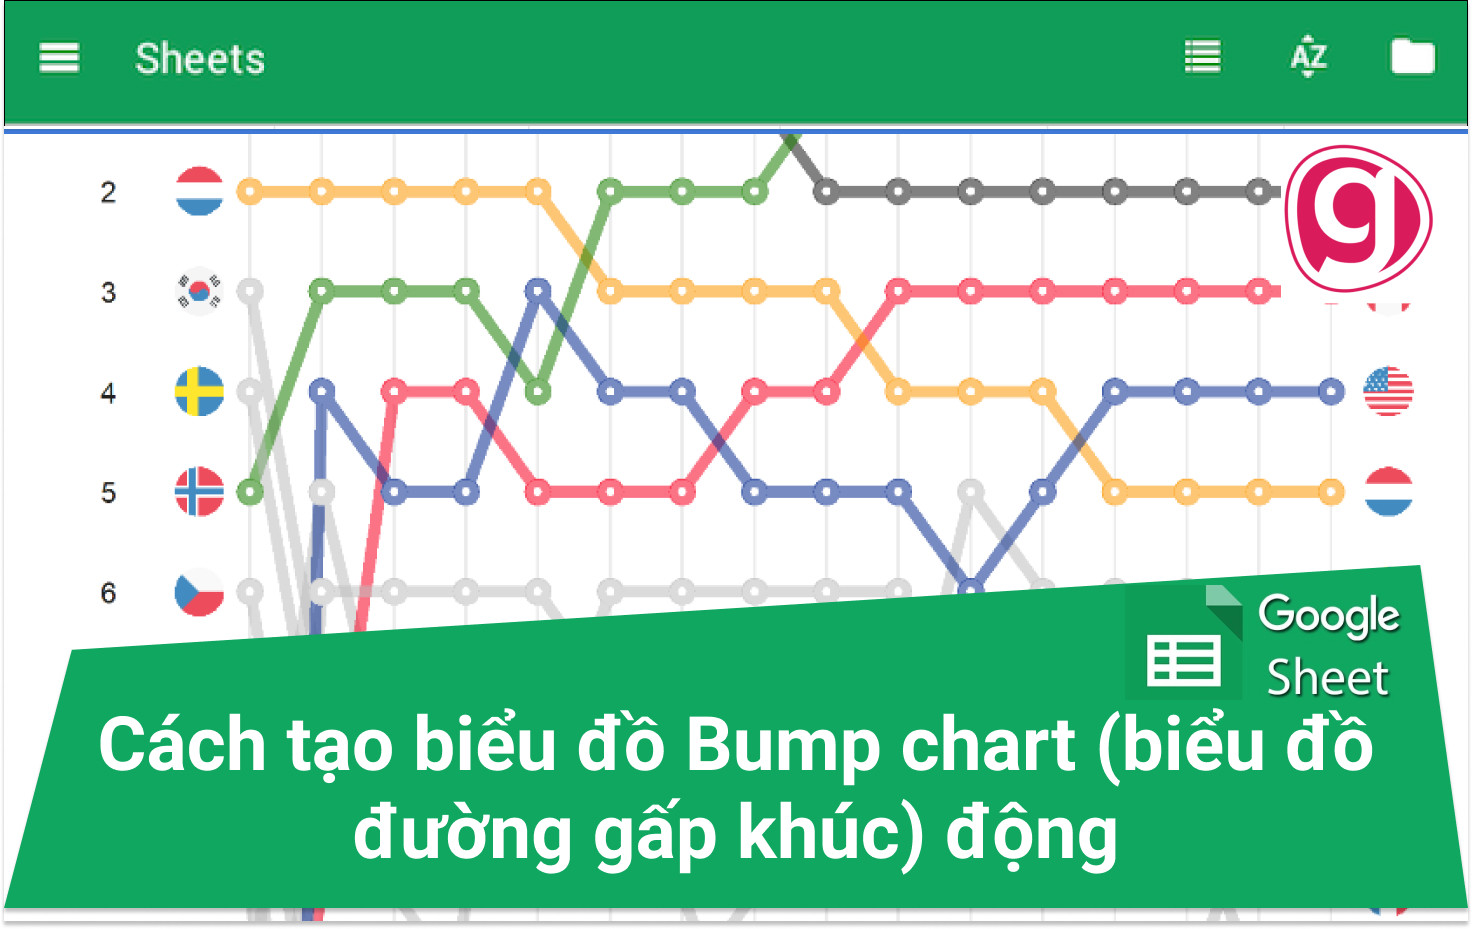 Bump chart và Excel động đều là những công cụ hữu ích cho việc biểu diễn dữ liệu một cách đẹp mắt và dễ hiểu. Hình ảnh liên quan sẽ cho bạn một cái nhìn trực quan về cách mà chúng có thể được sử dụng để thể hiện xu hướng thay đổi của dữ liệu thời gian và giúp bạn hiểu rõ hơn về tình hình thực tế.